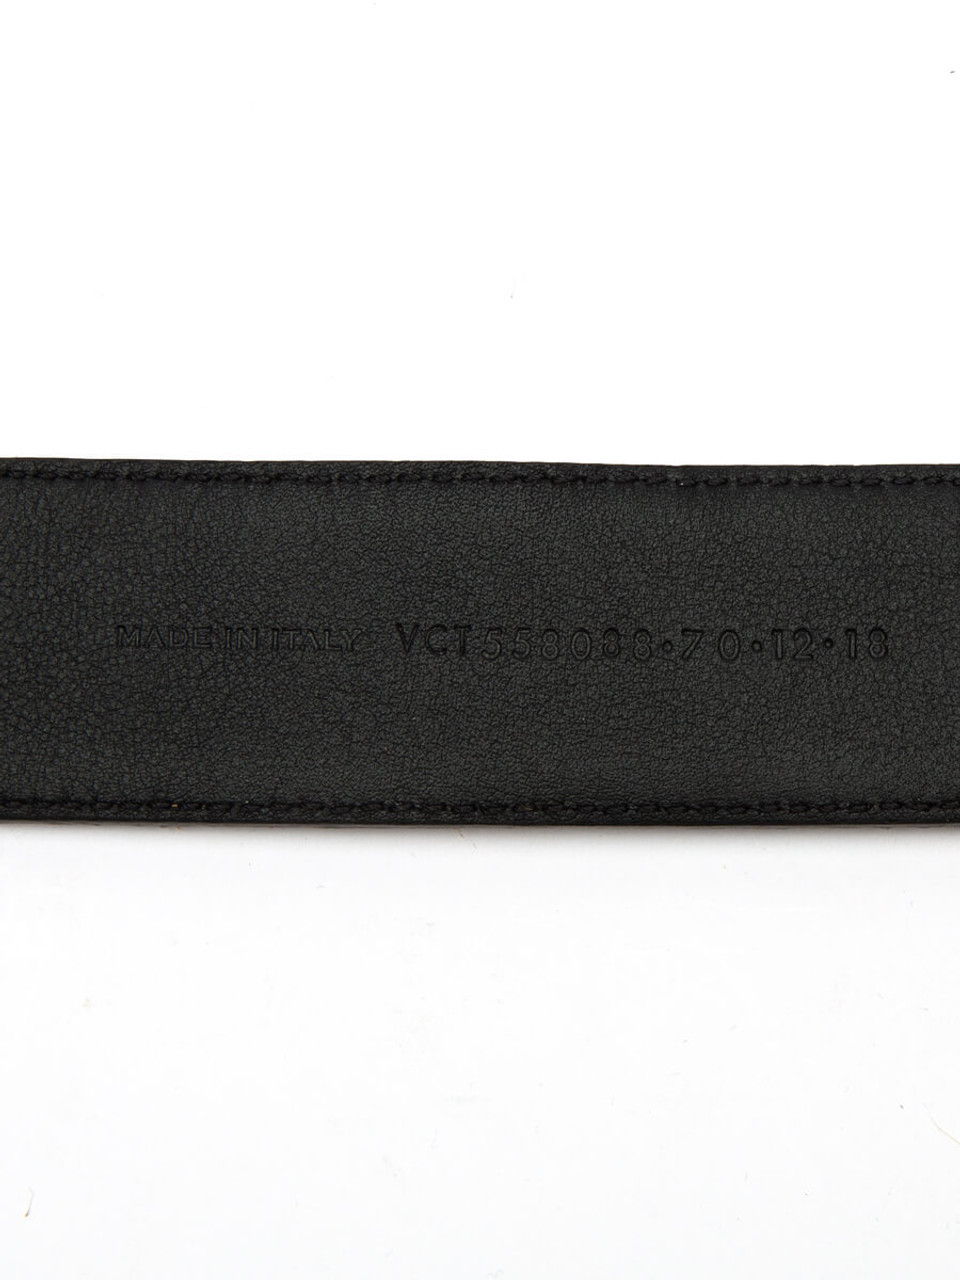 Yves Saint Laurent Women's Monogram Belt, Brown, Suede